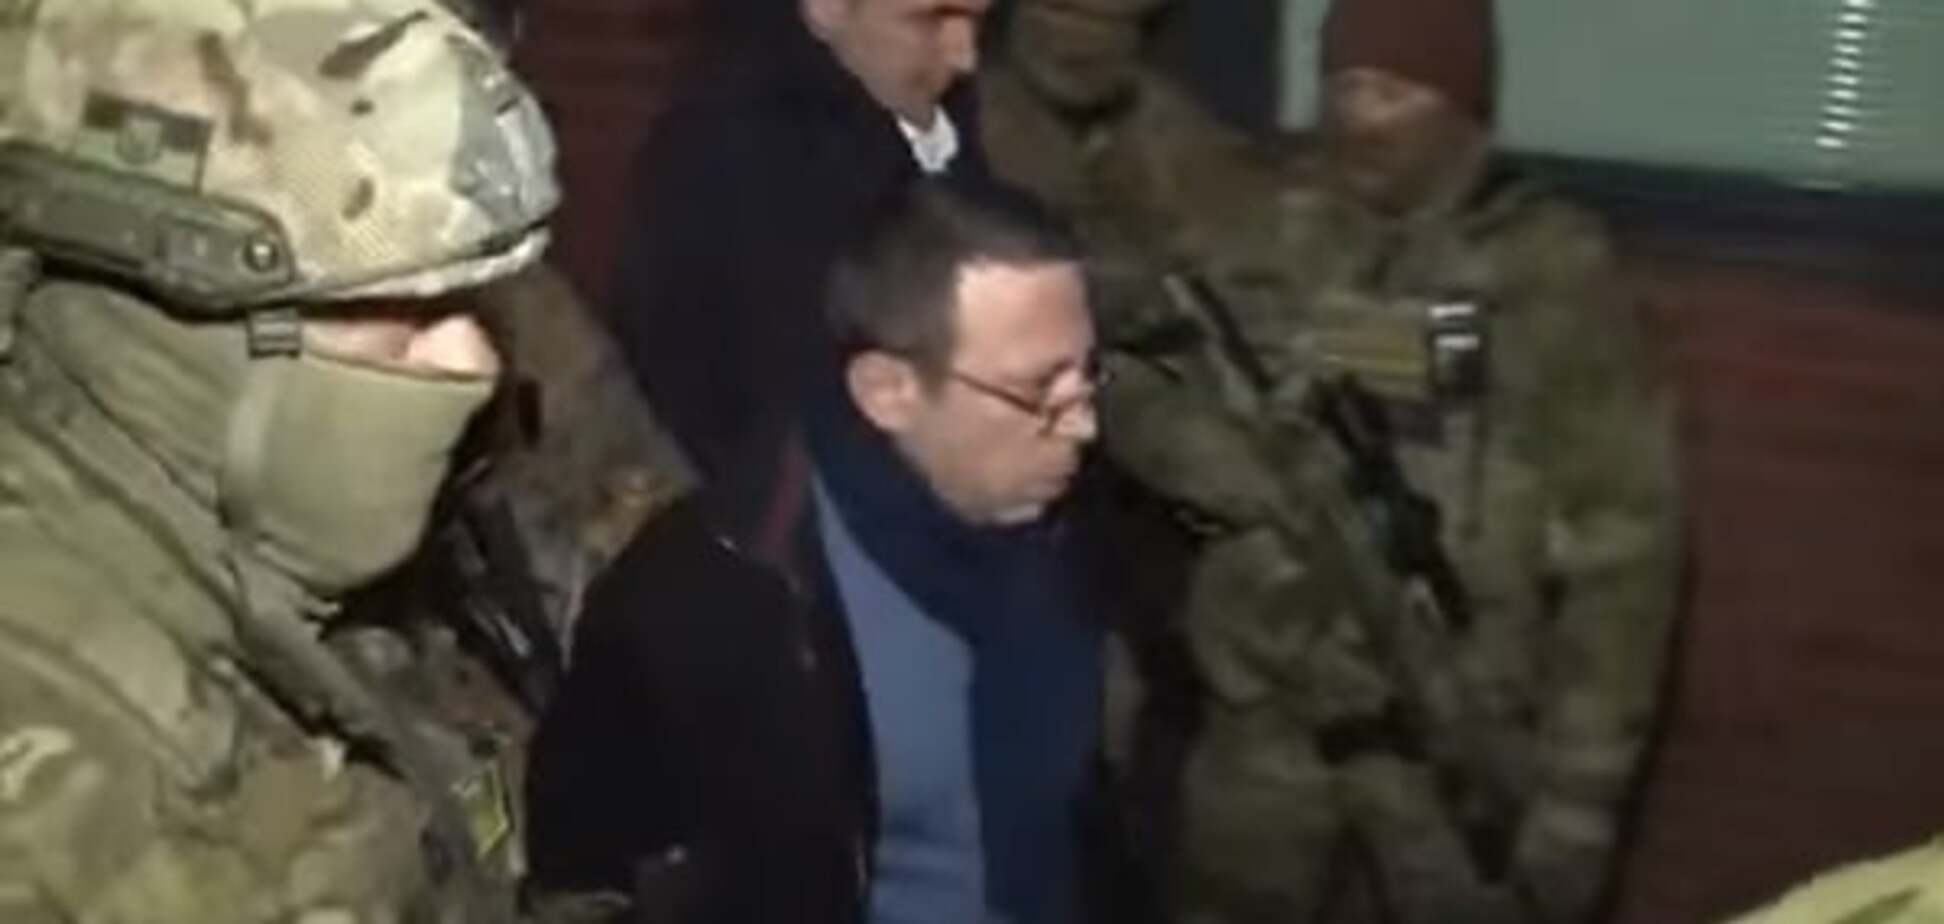 Корбана вже відпустили, він може їхати в Дніпропетровськ - адвокати